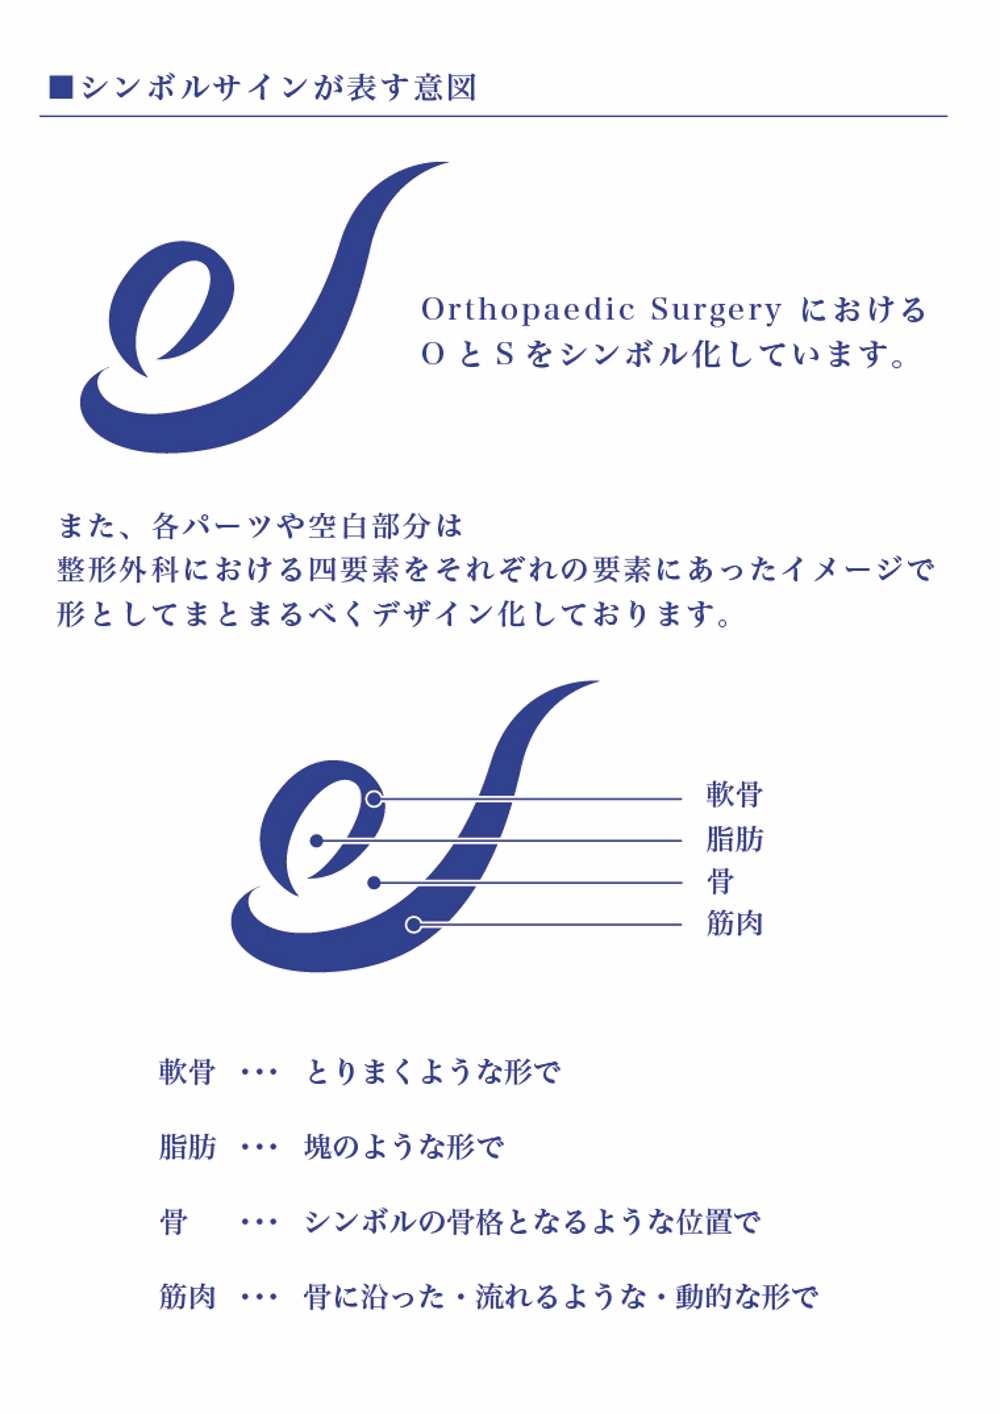 「Osaka University Orthopaedic Surgery」のロゴ作成